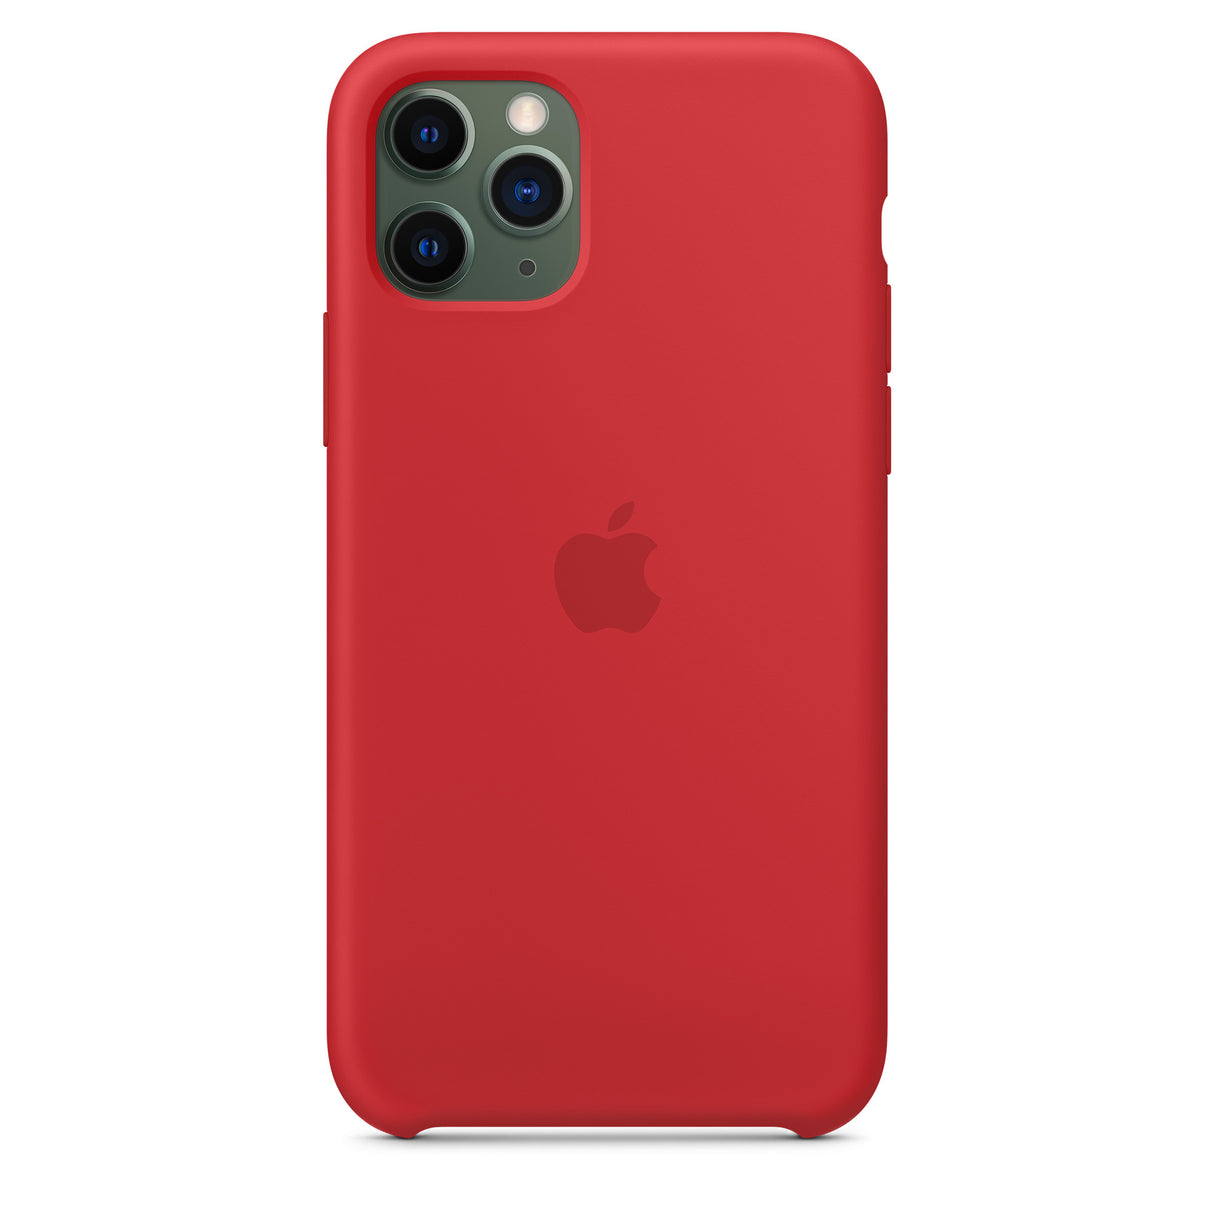 غطاء سيليكون لهاتف iPhone 11 Pro - (PRODUCT)RED OB 